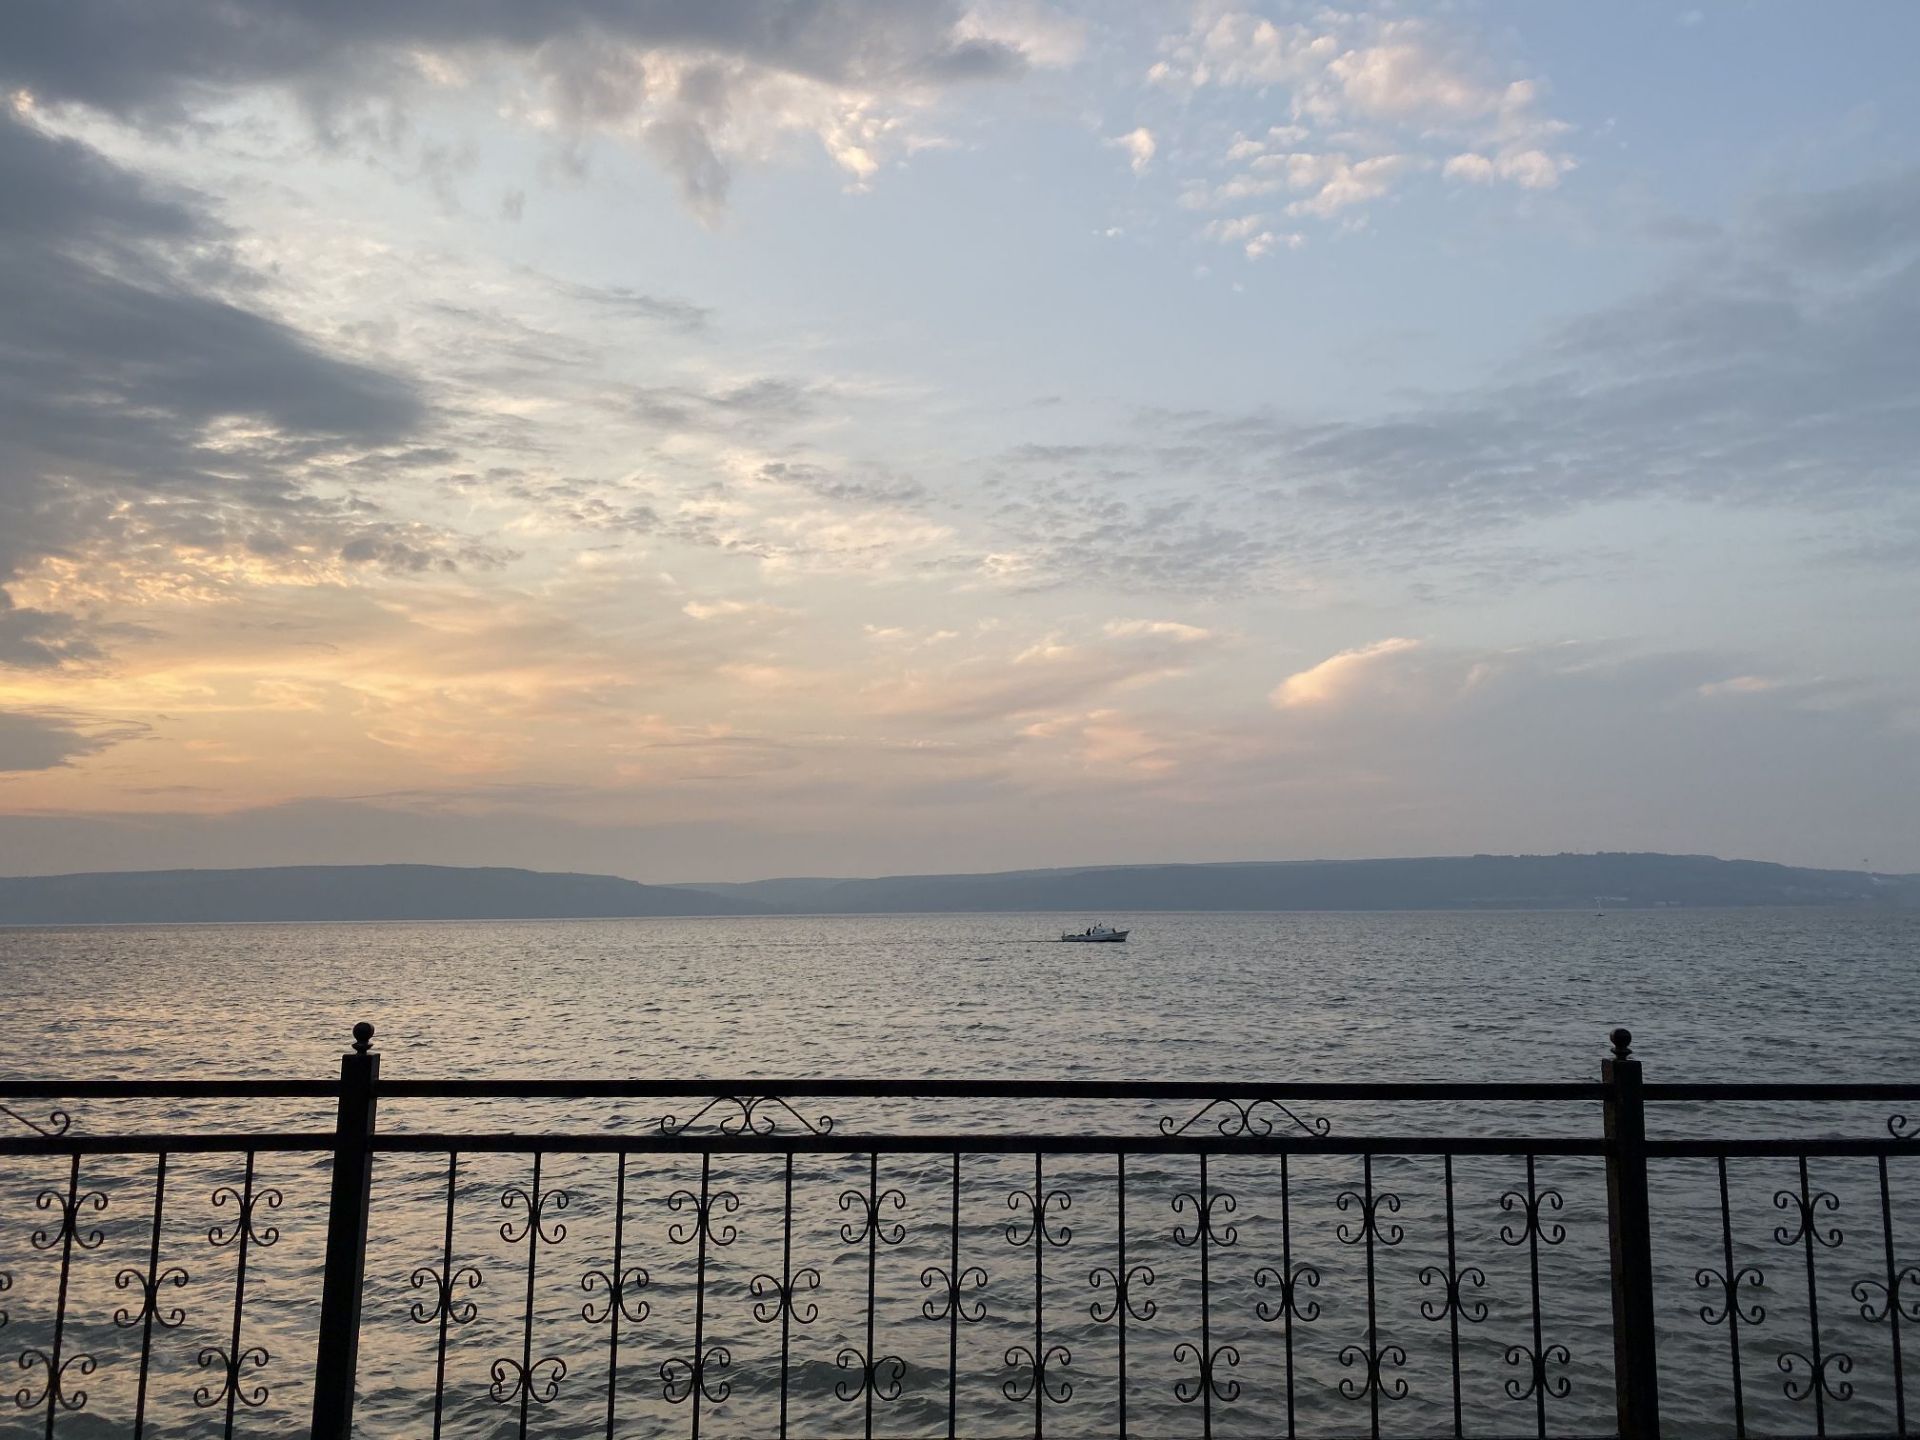 渡轮穿过达达尼尔海峡，伴随着阵阵海鸥鸣声，我们终于遇见了风光旖旎的爱琴海。特洛伊古城内，层层叠叠堆积